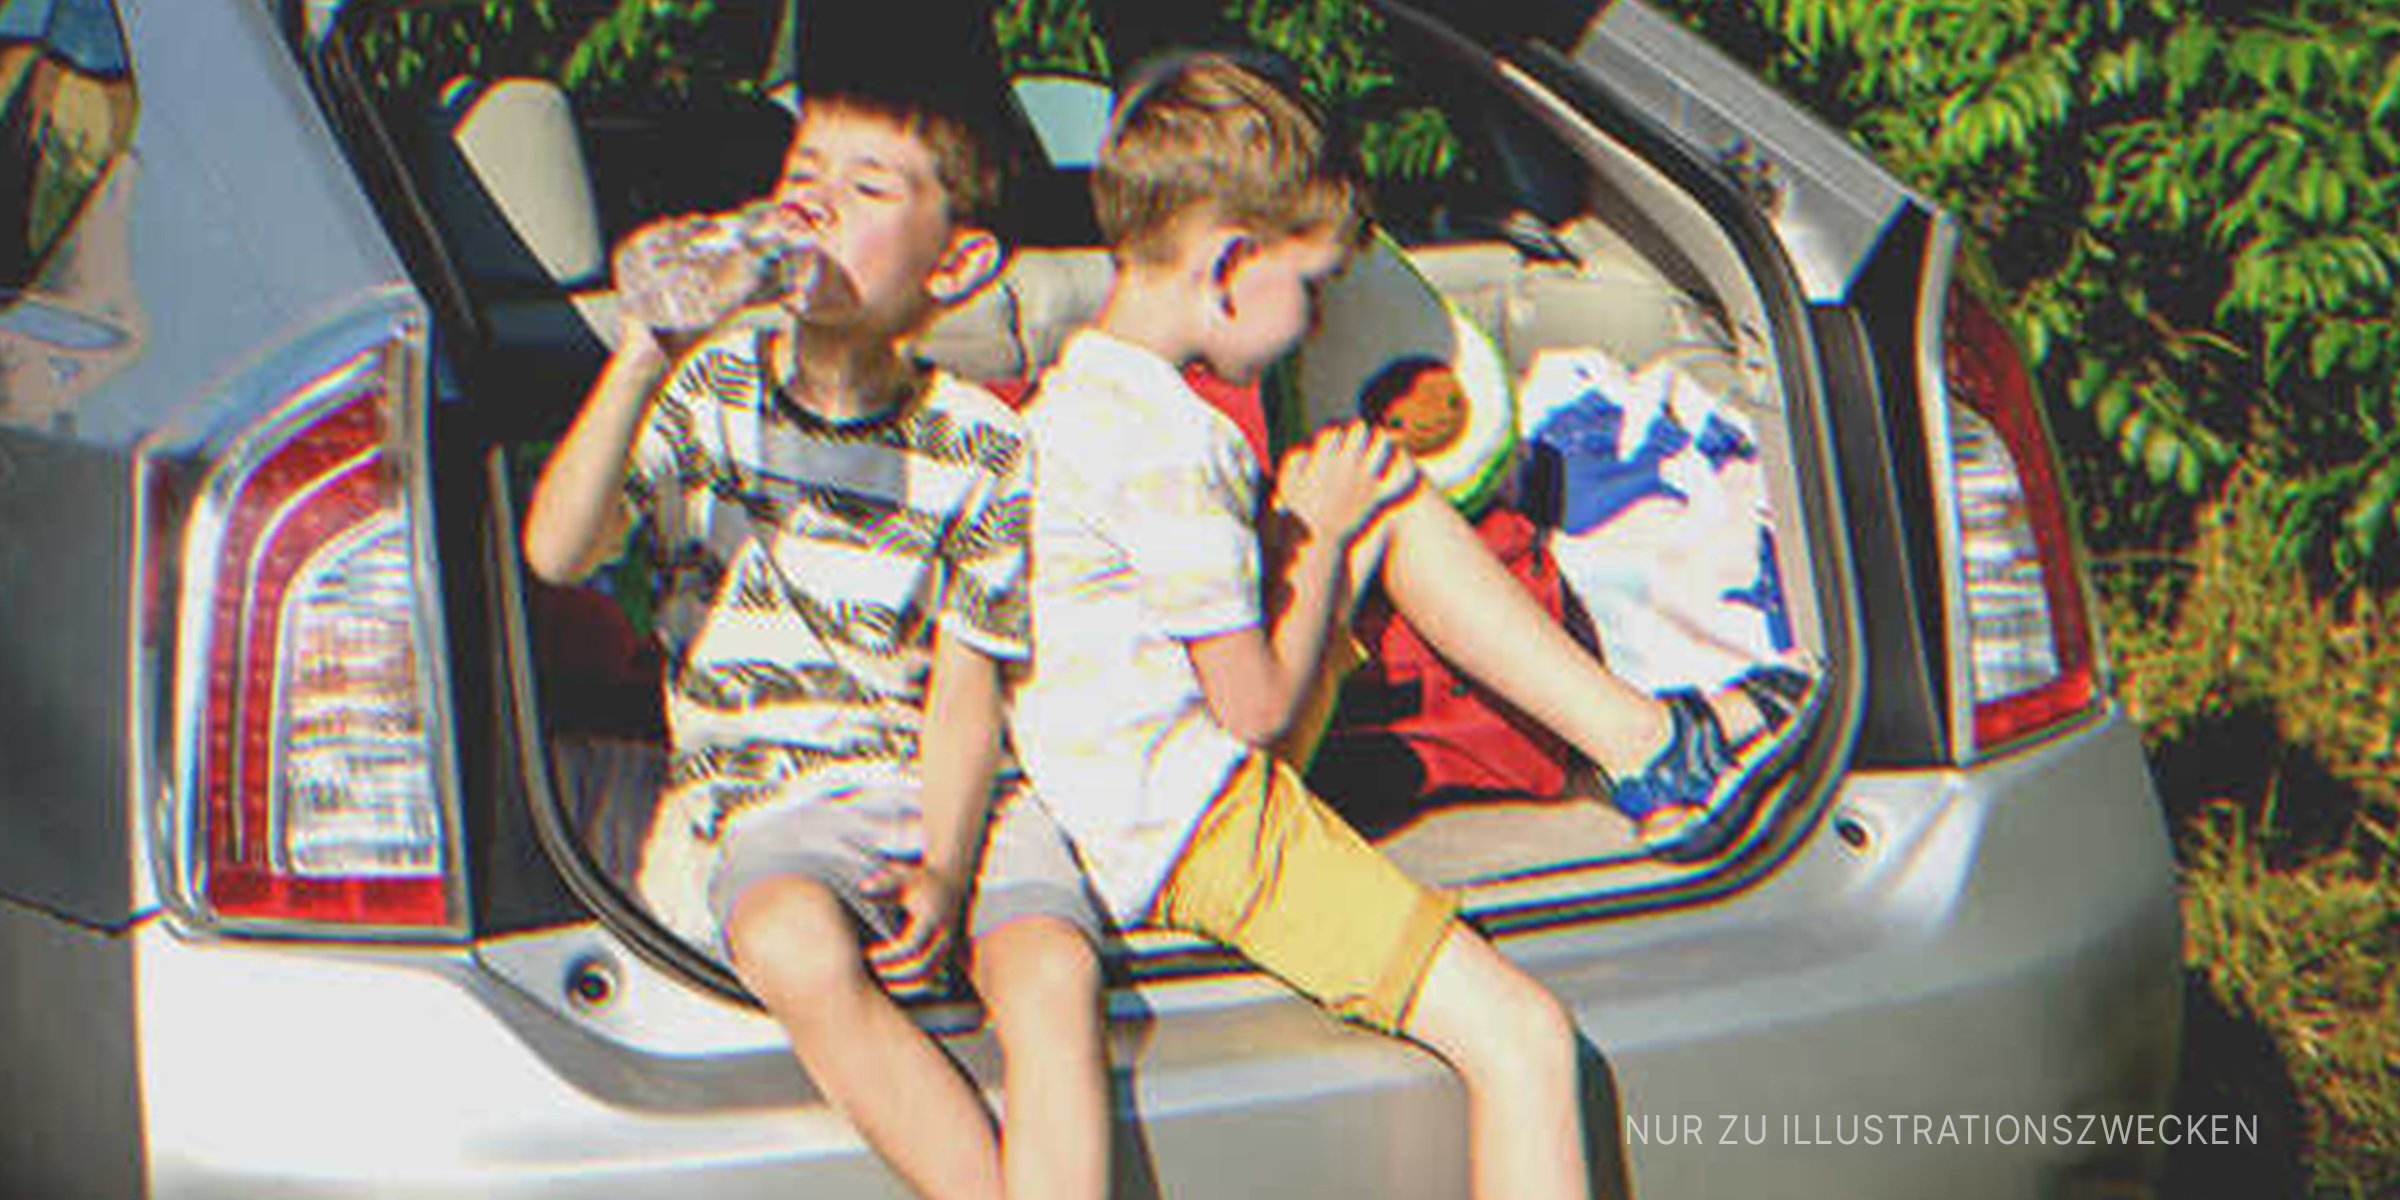 Zwei Jungs sitzen in einem Kofferraum | Quelle: Shutterstock